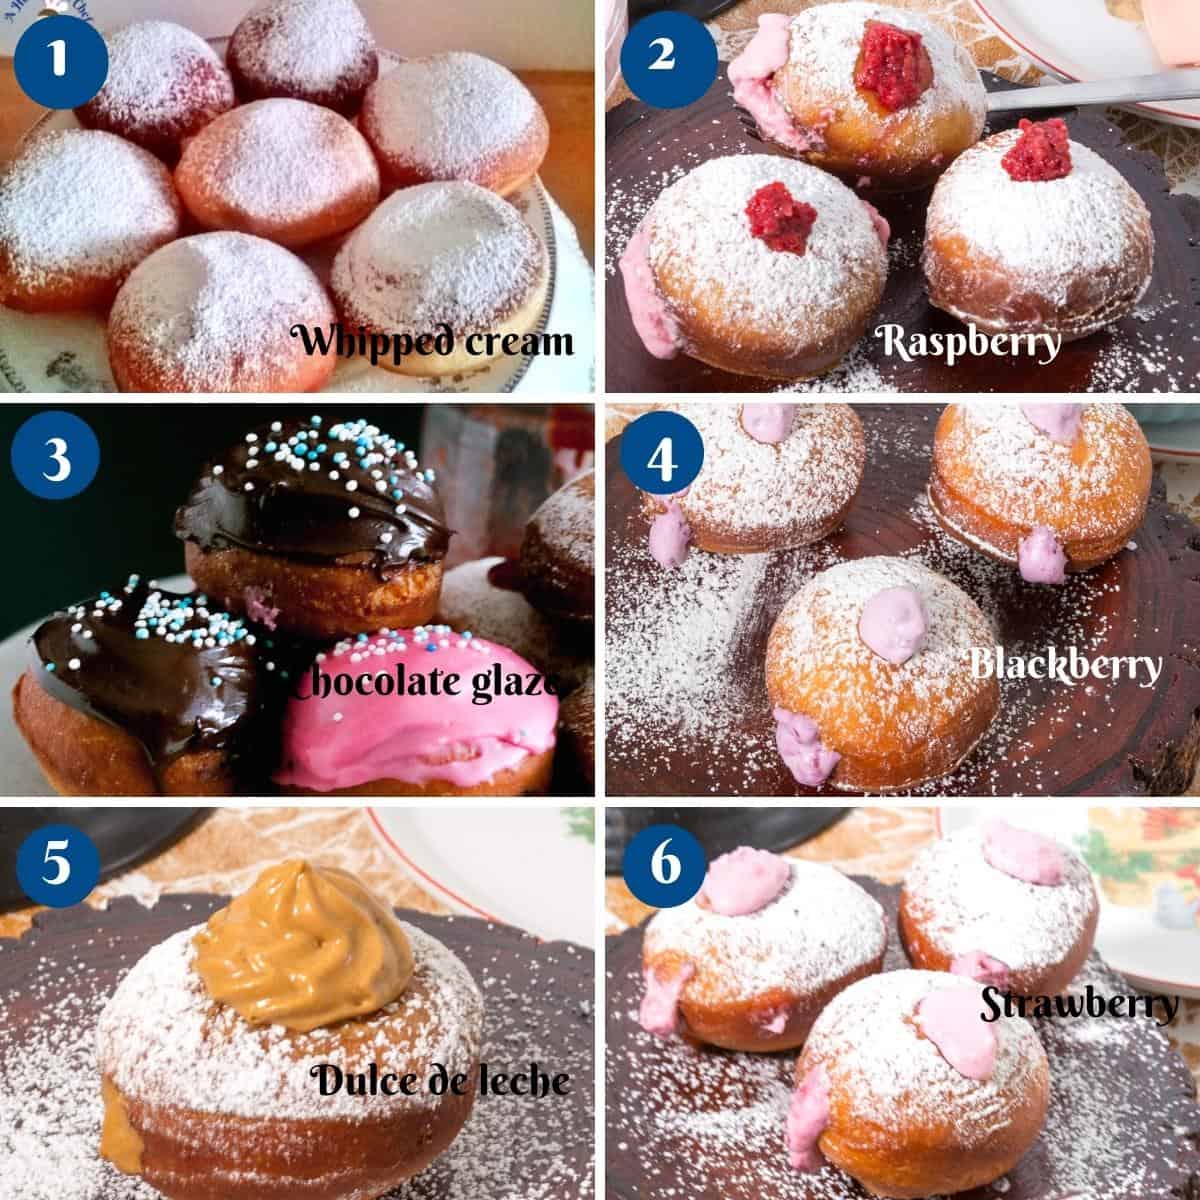 Six varieties of donut fillings. 